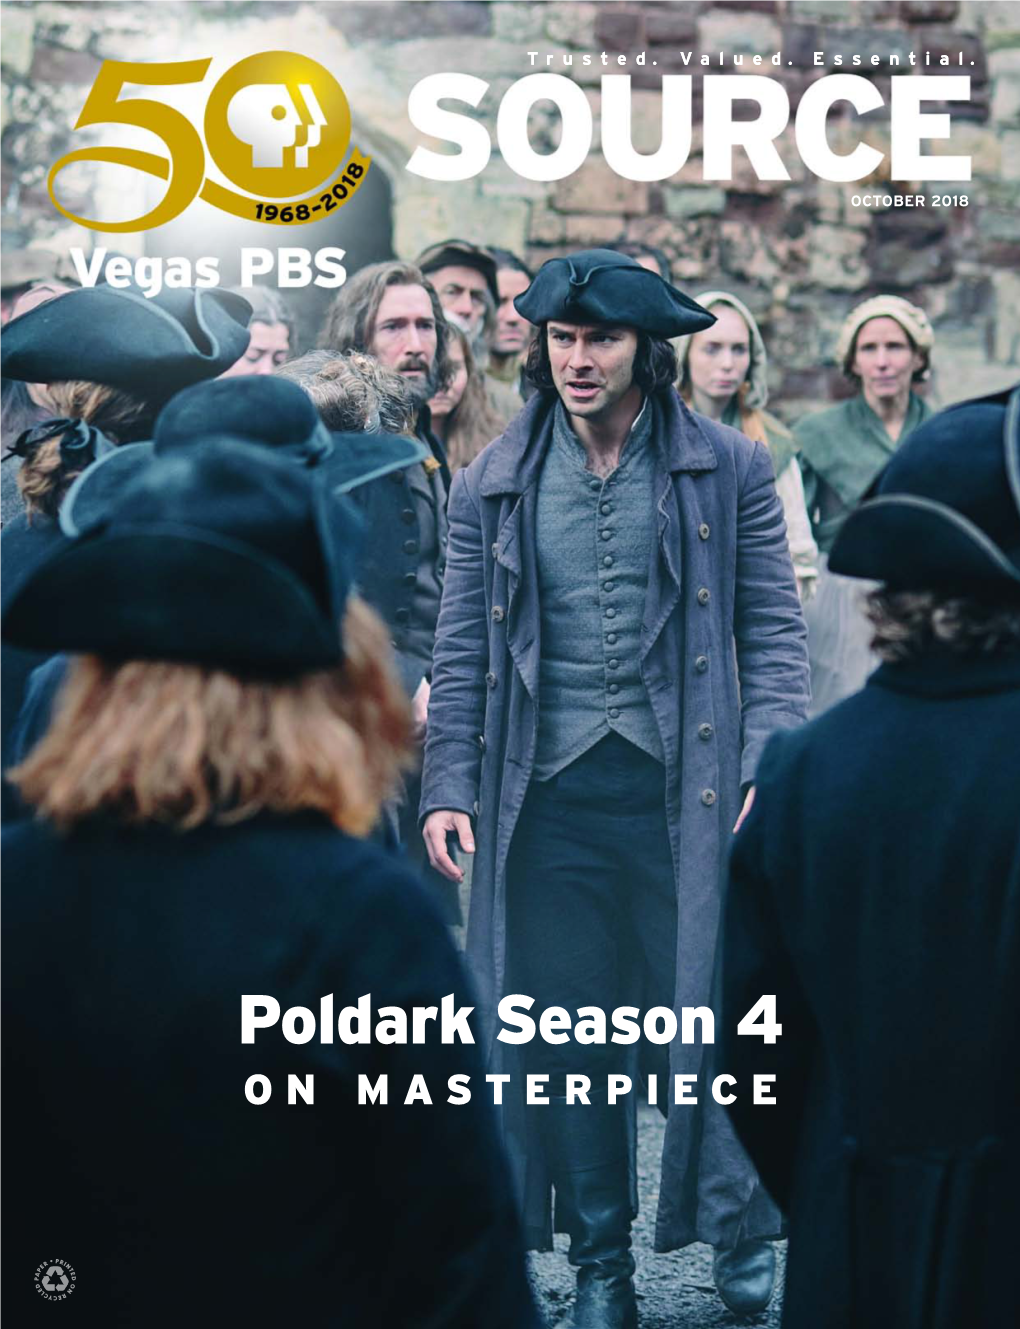 Poldark Season 4 on MASTERPIECE